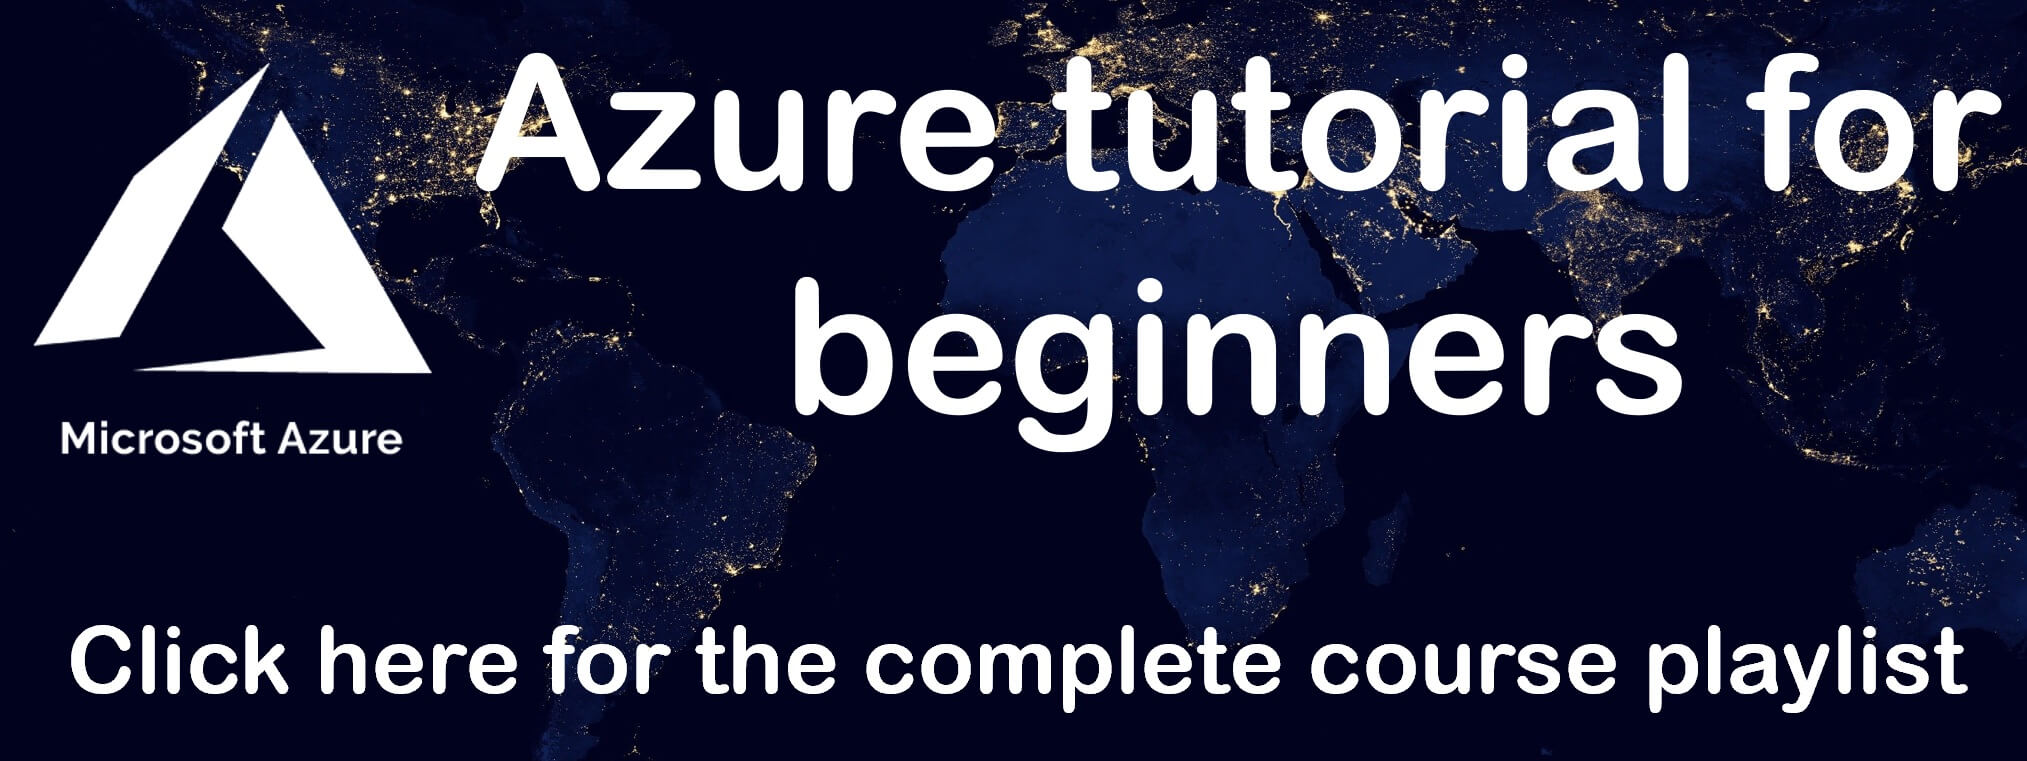 Azure tutorial for beginners